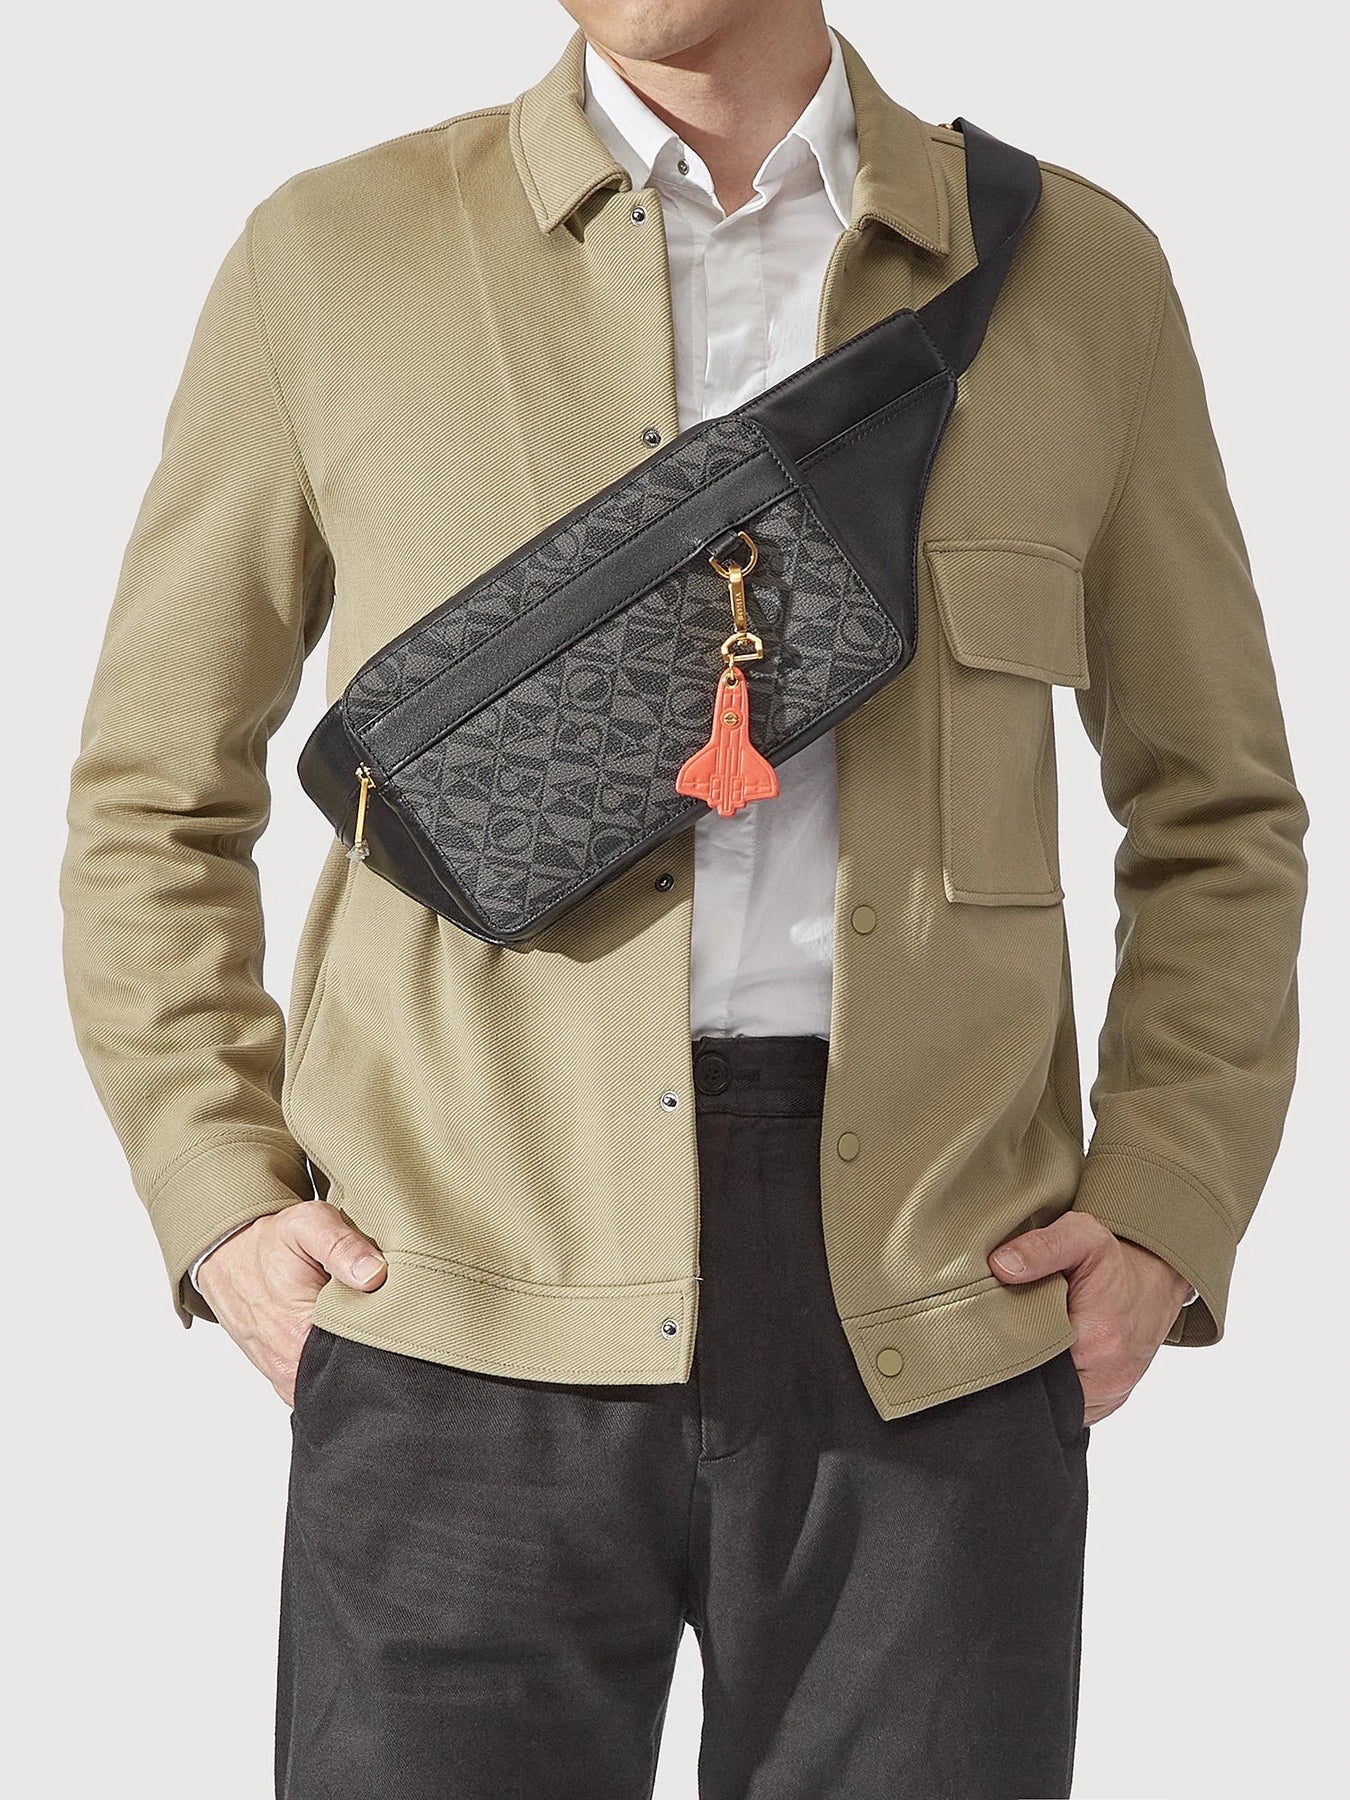 Bonia Black Monogram Messenger Men's Bag with Adjustable Strap  866013-003-08